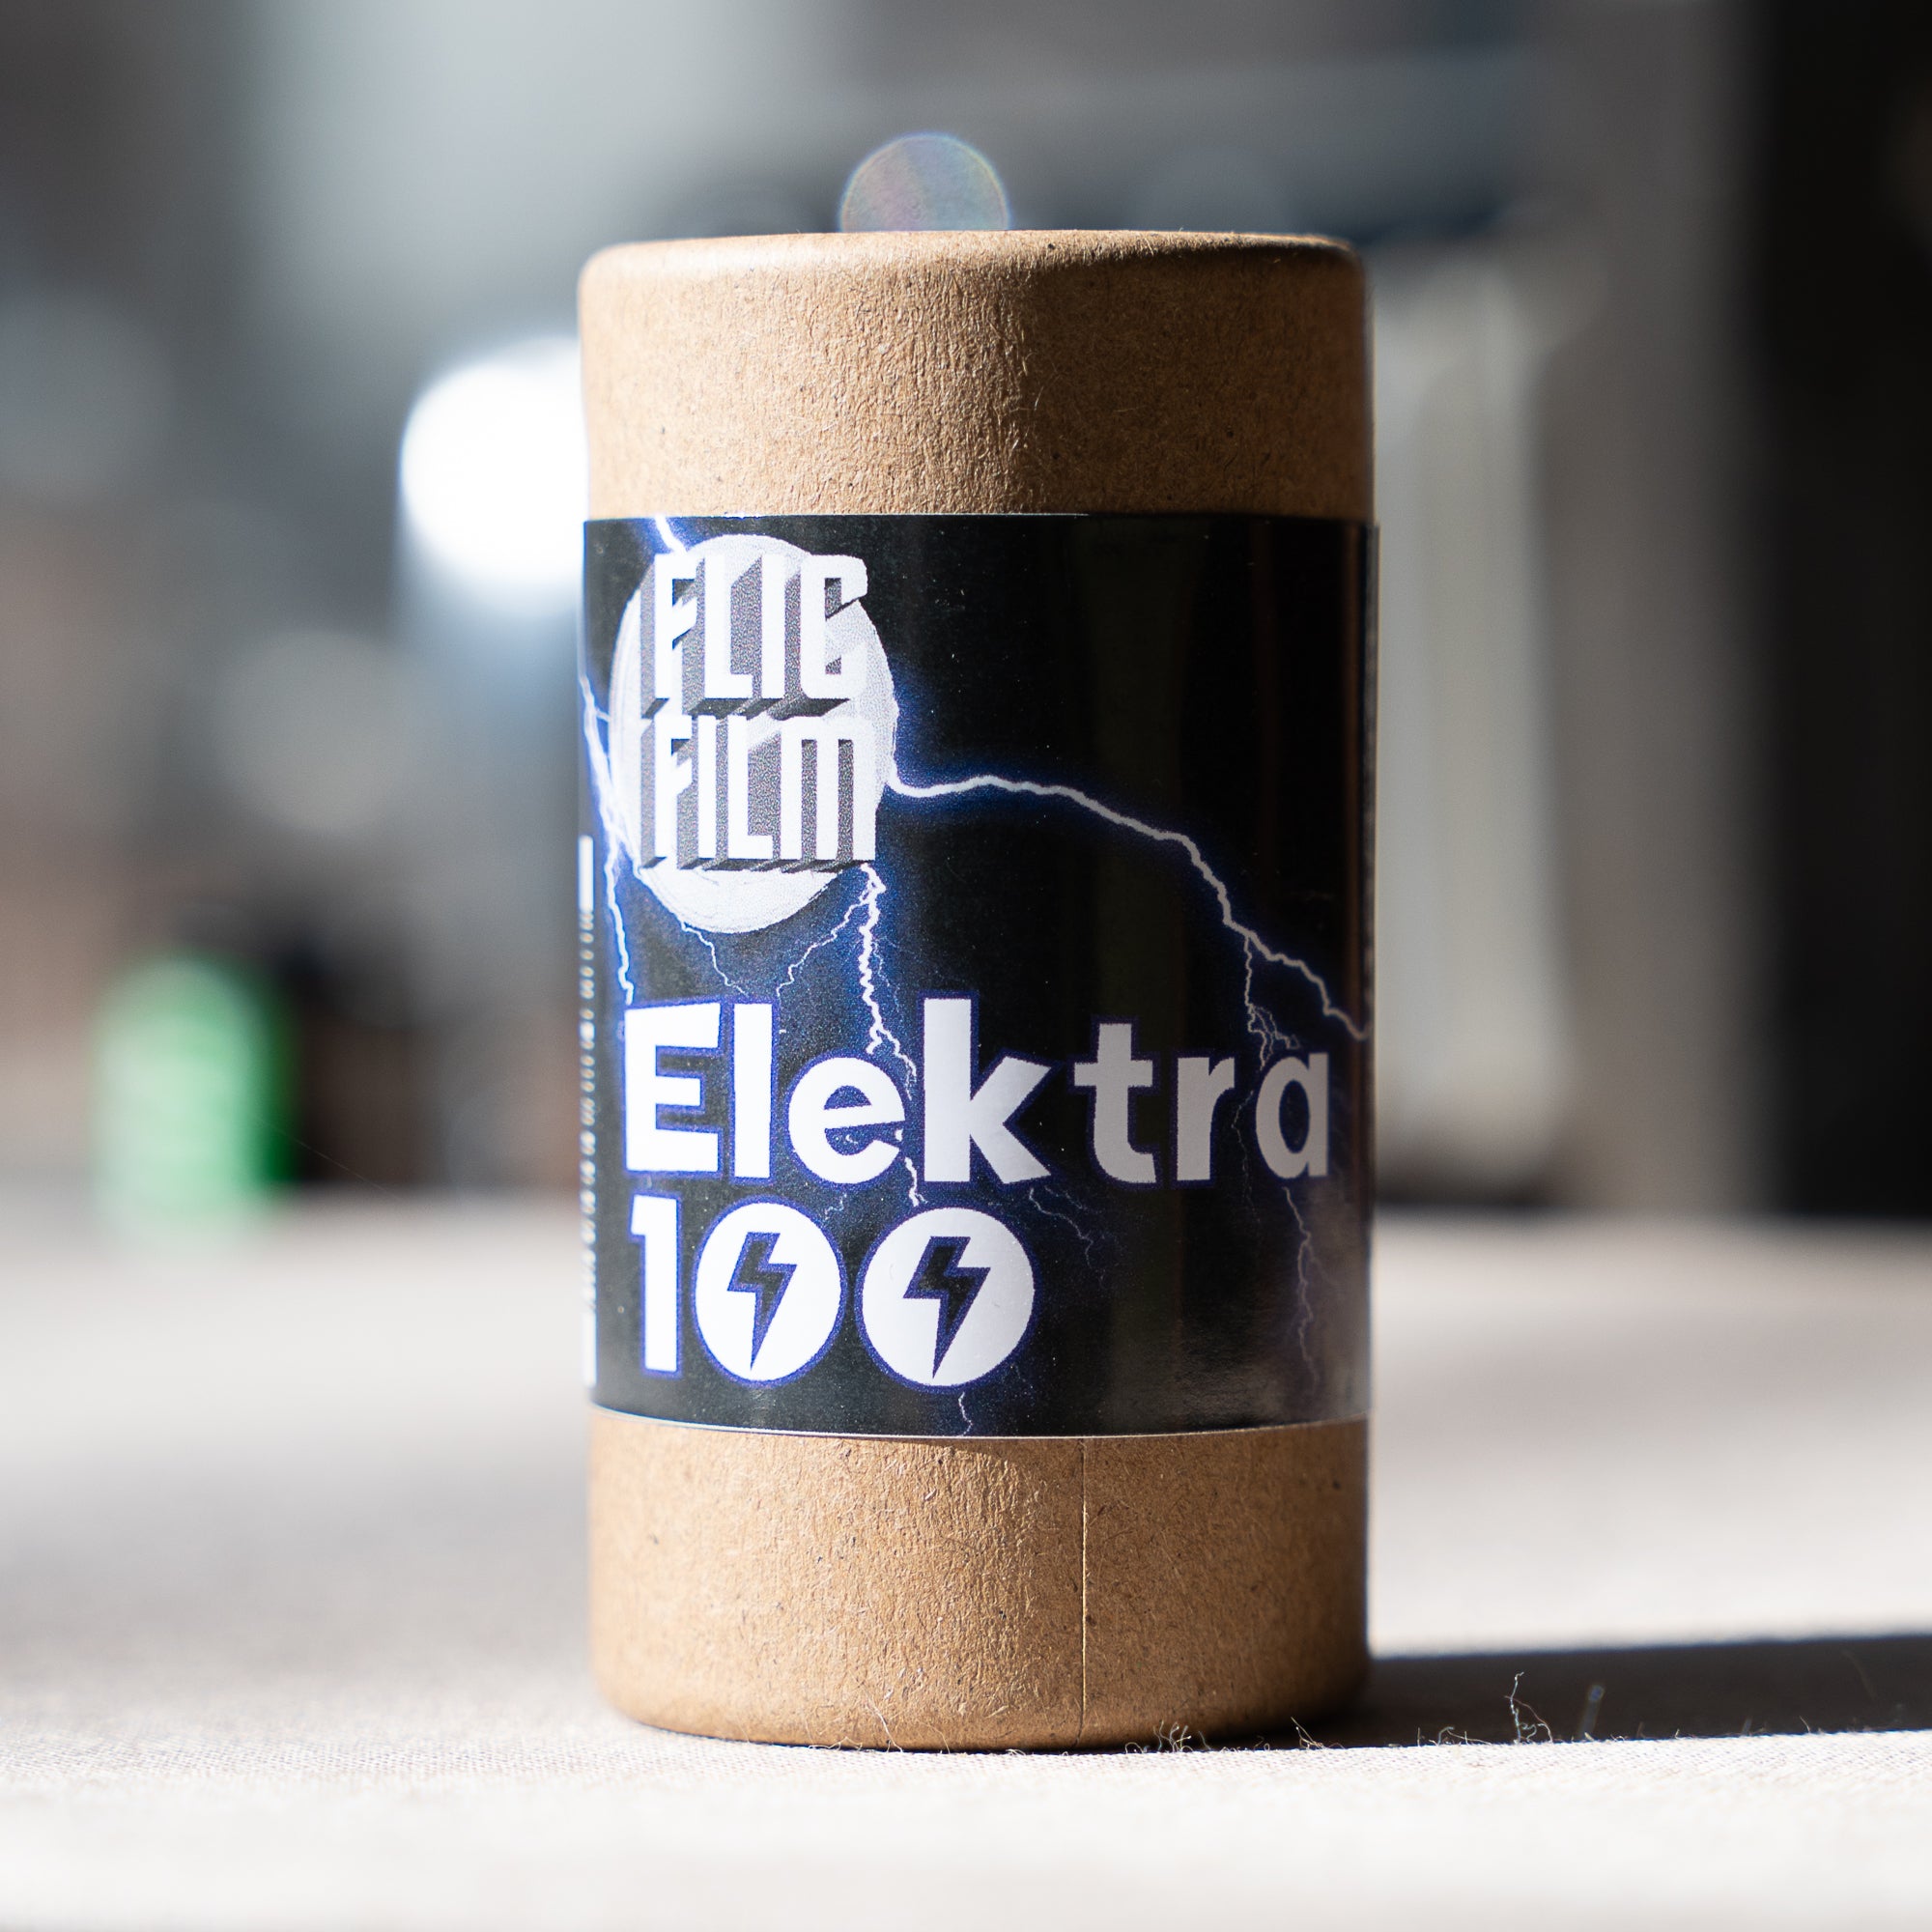 Flic Film Elektra 100 (35mm Roll Film, 36 Exposures) - Victory Camera